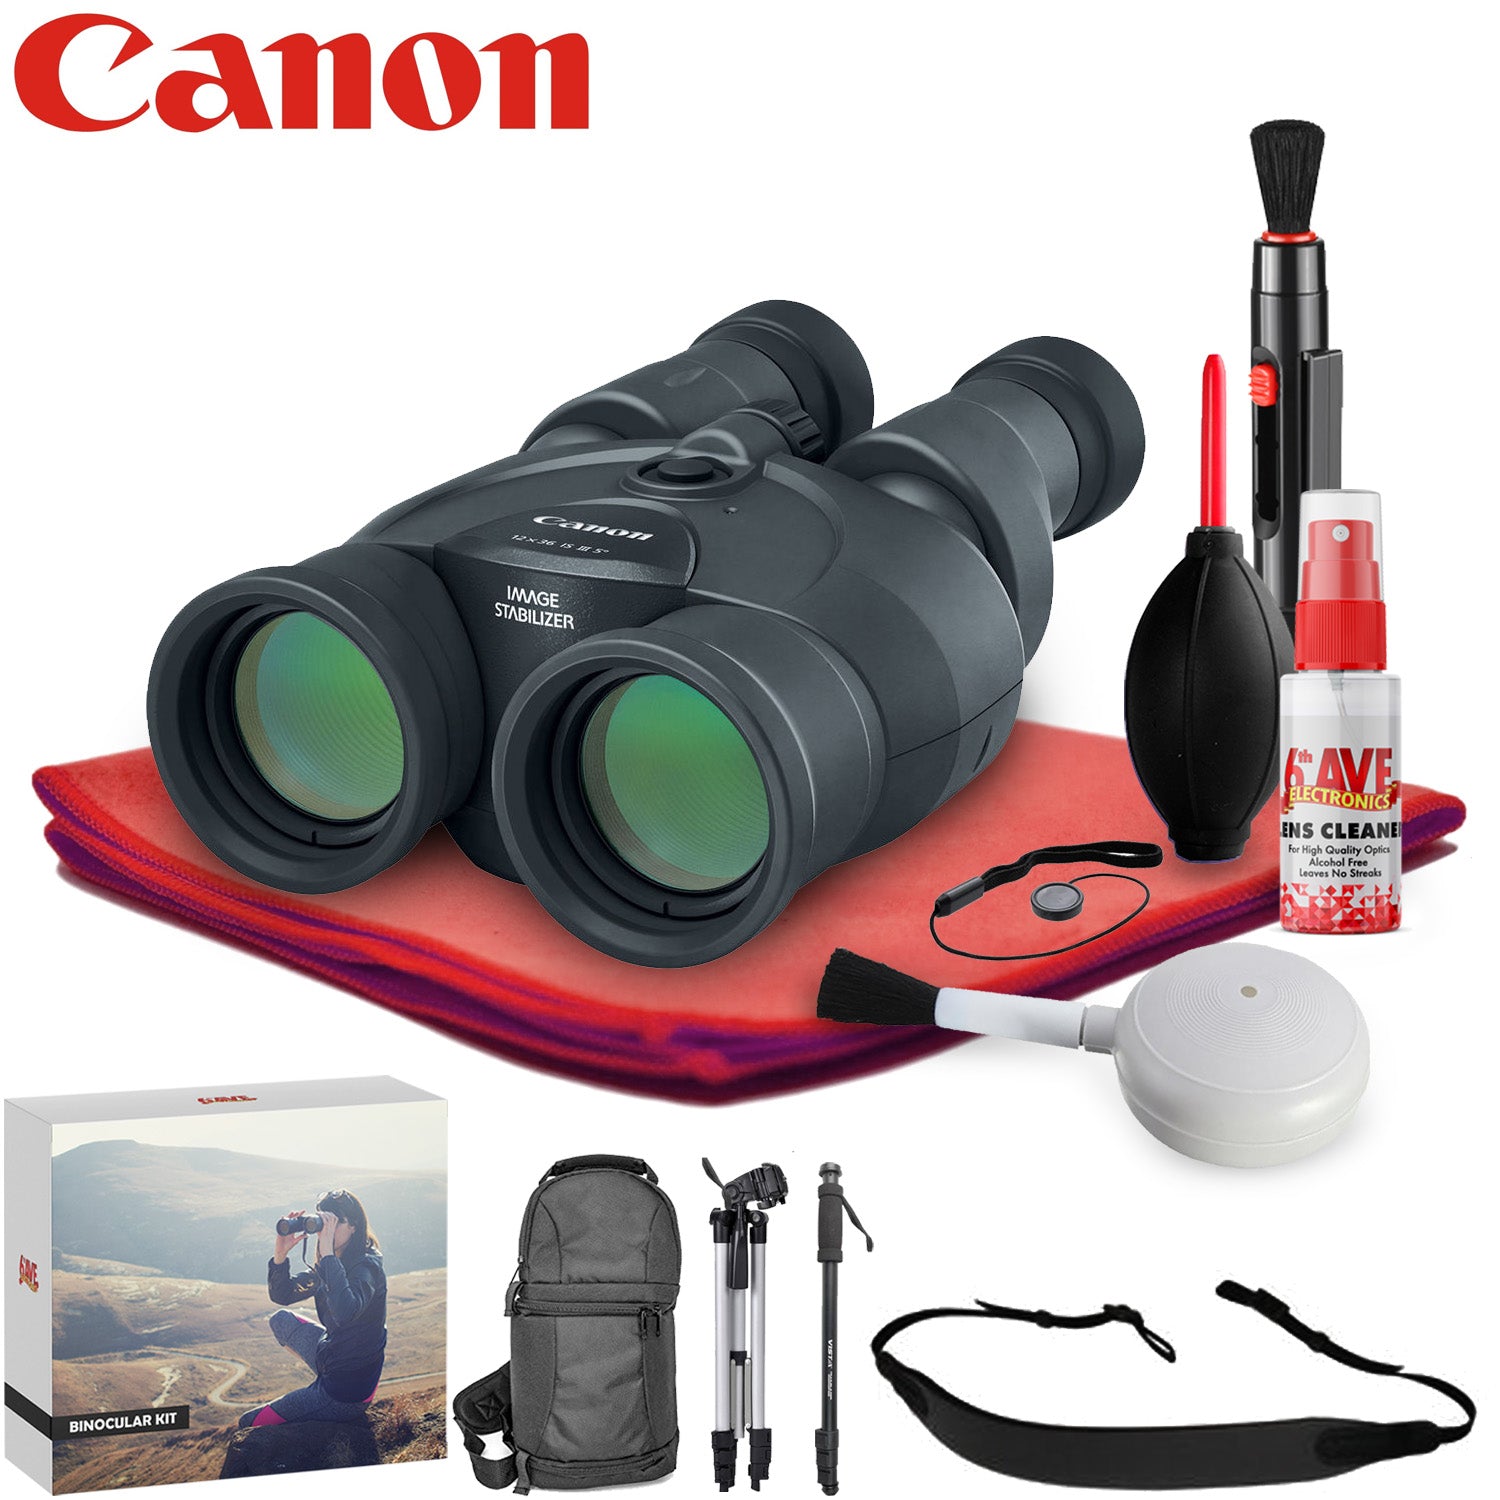 Canon 12x36 IS III Image Stabilized Binocular - Exclusive Outdoors Binoculars Bundle